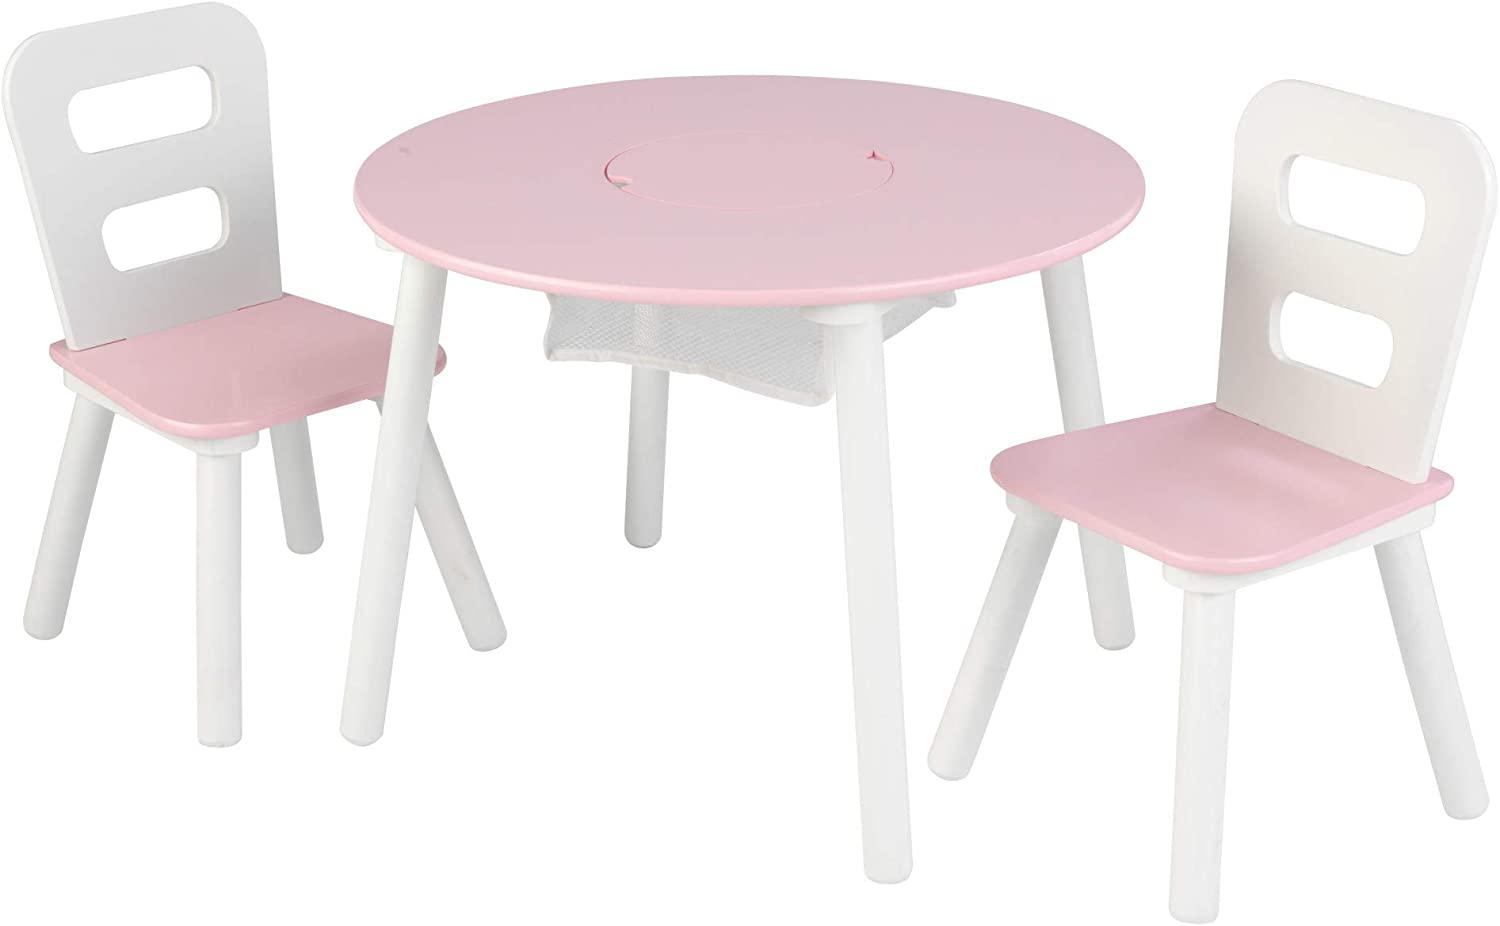 KidKraft 26165 'Kindertisch mit 2 Stühlen', Massivholz, rosa/weiß, ab 3 Jahren Bild 1